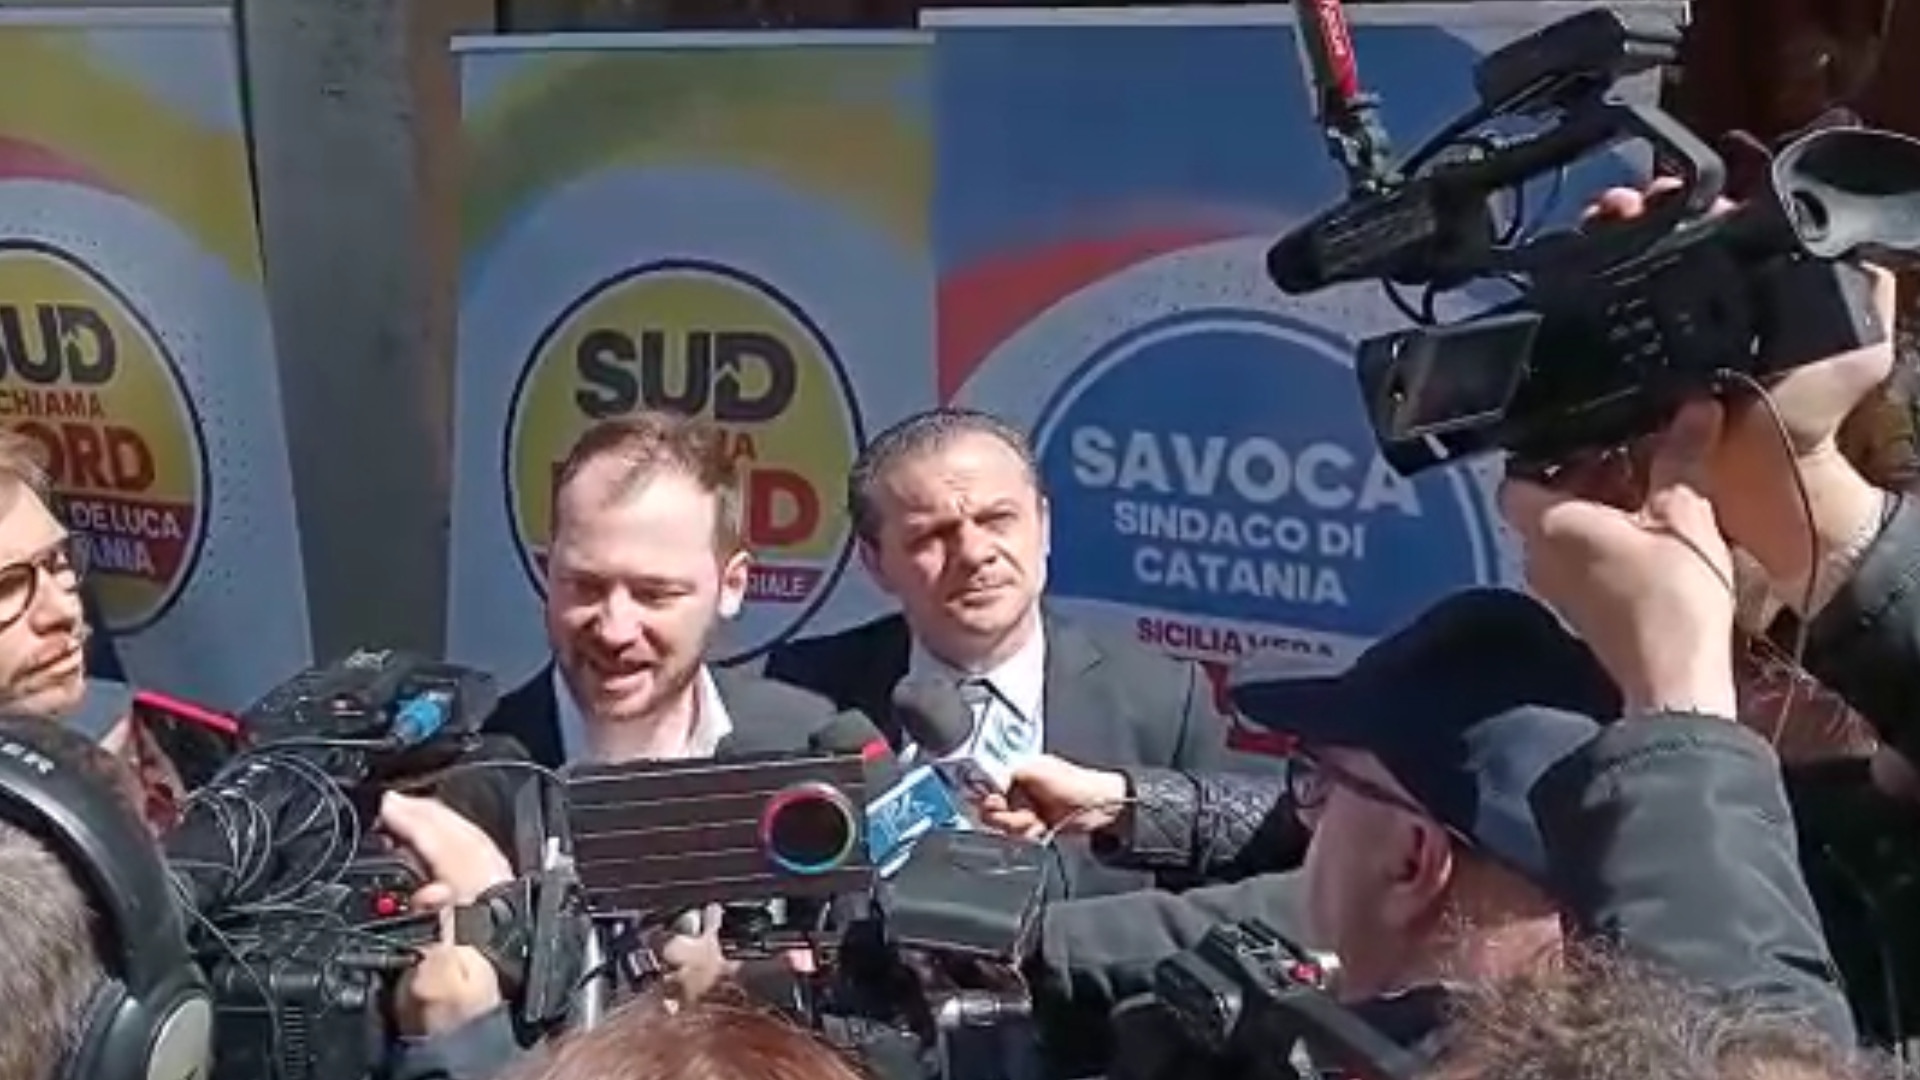 Amministrative, De Luca presenta Savoca come candidato sindaco<br>L’atteso ritorno del «figliol prodigo» Villari e il sostegno a Maugeri